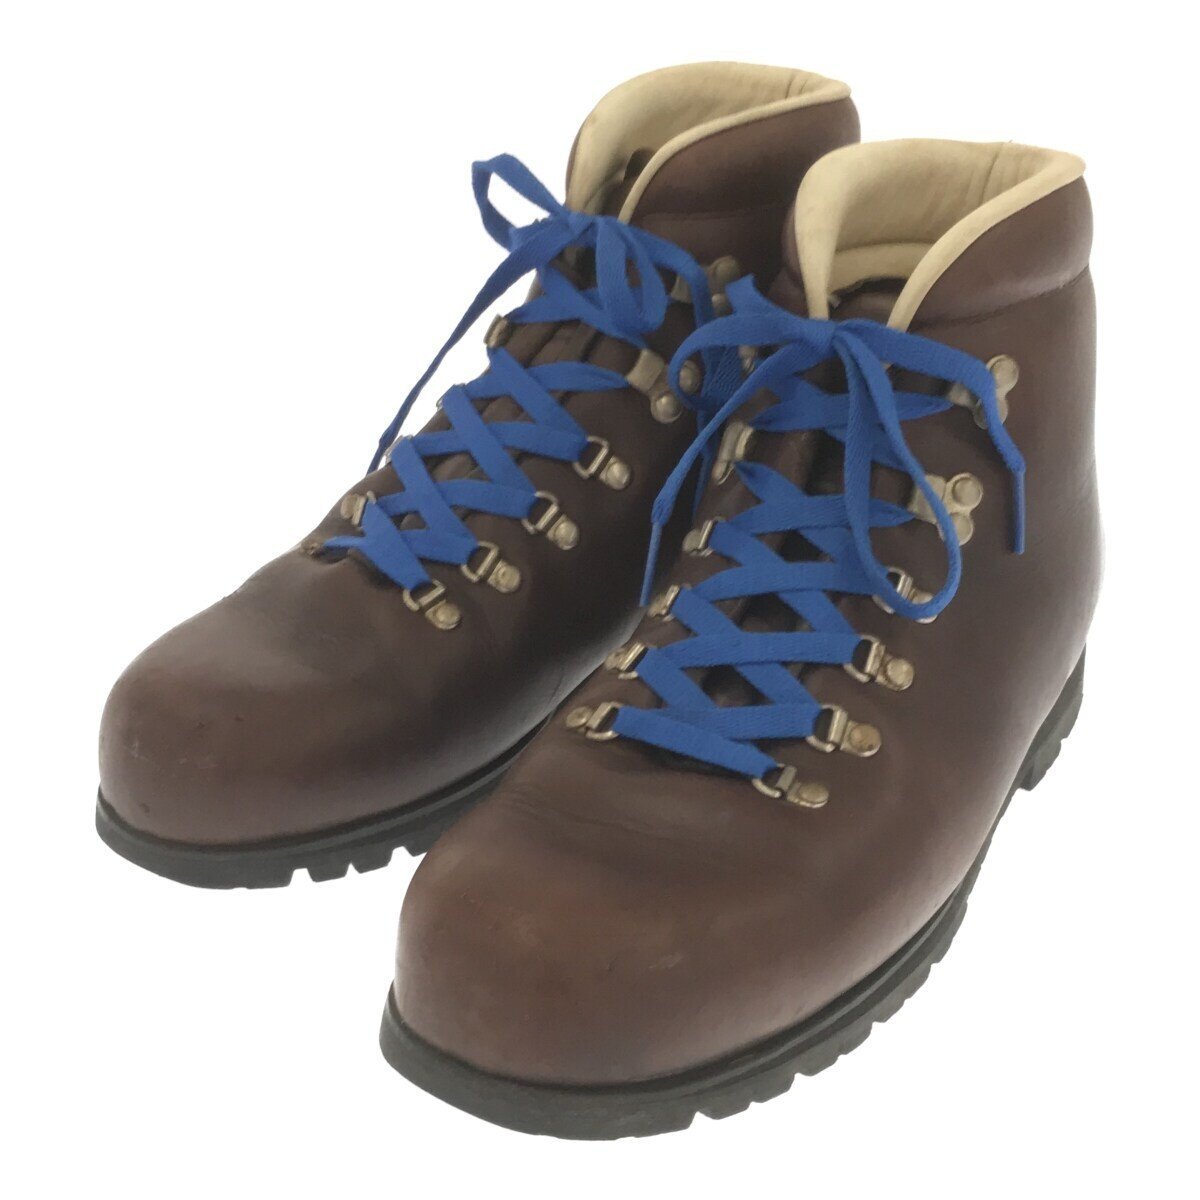 MERRELL メレル 【men568AH】 90's Leather Hiking Boots レザーハイキングブーツ マウンテンブーツ ダークブラウン ヴィンテージブーツ TW